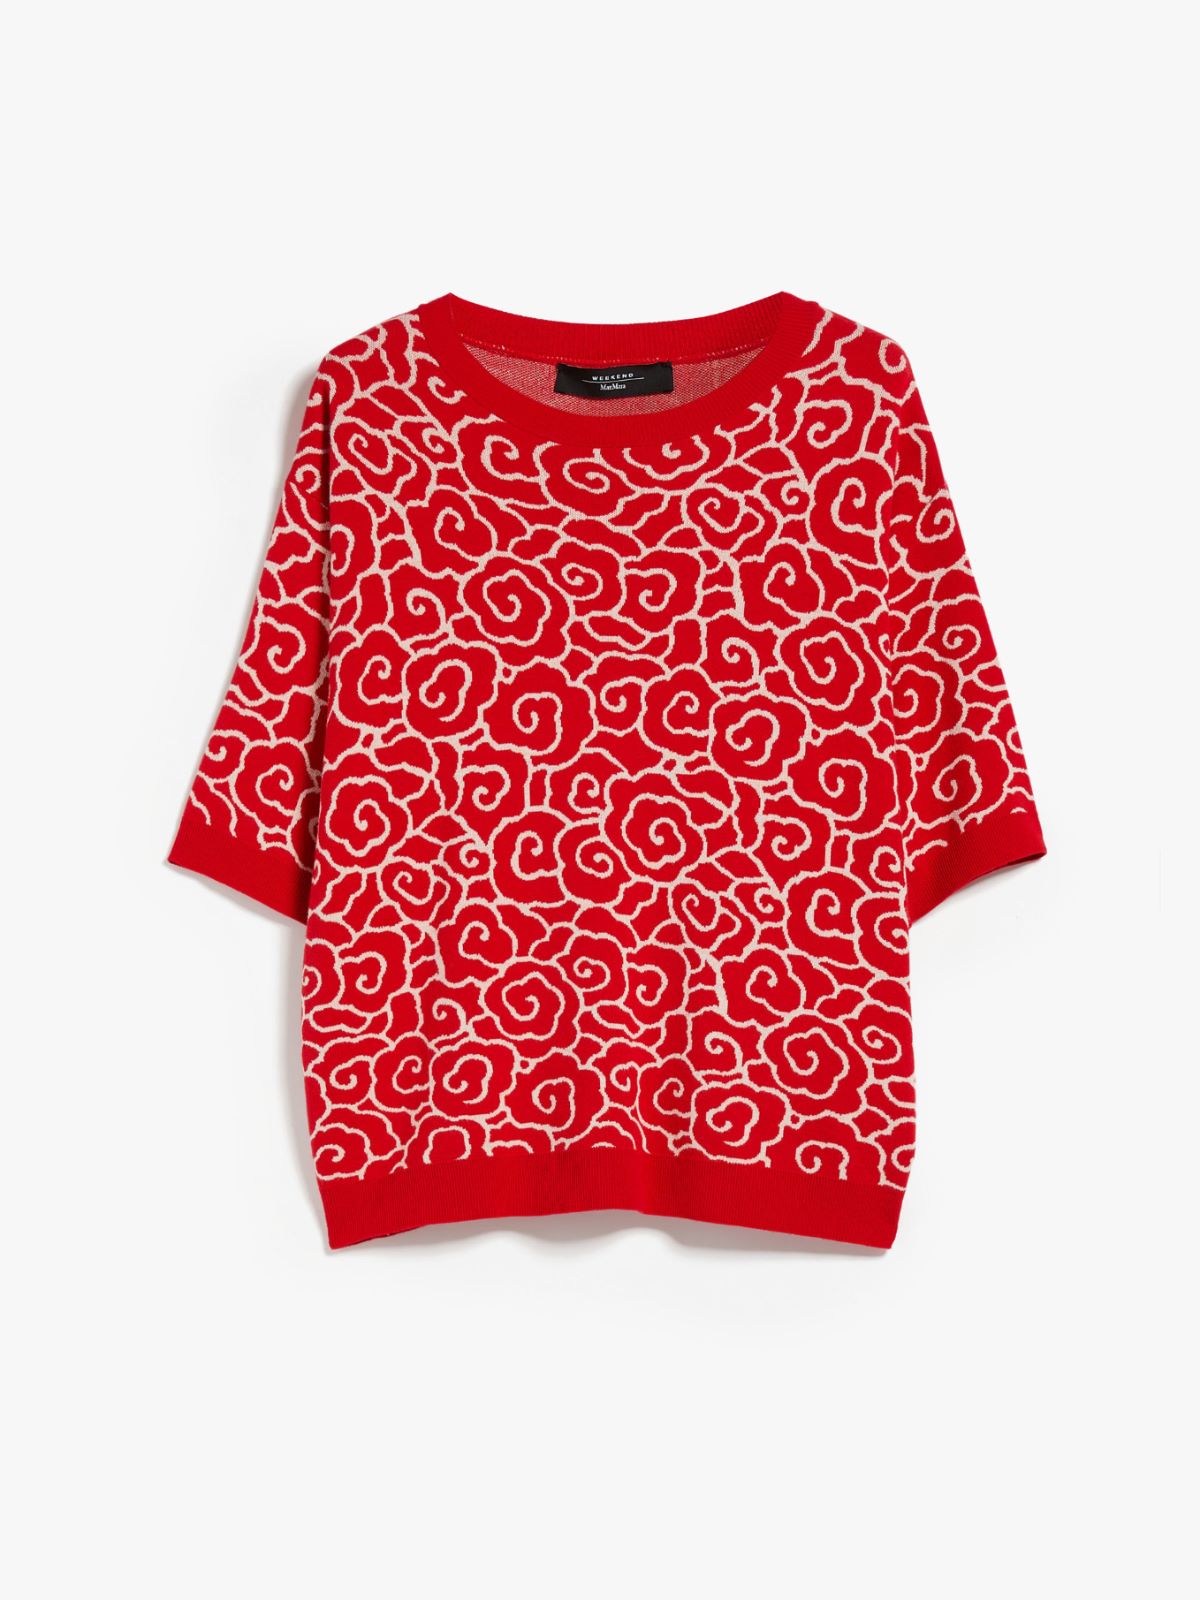 Viscose jacquard T-shirt, red | Weekend Max Mara